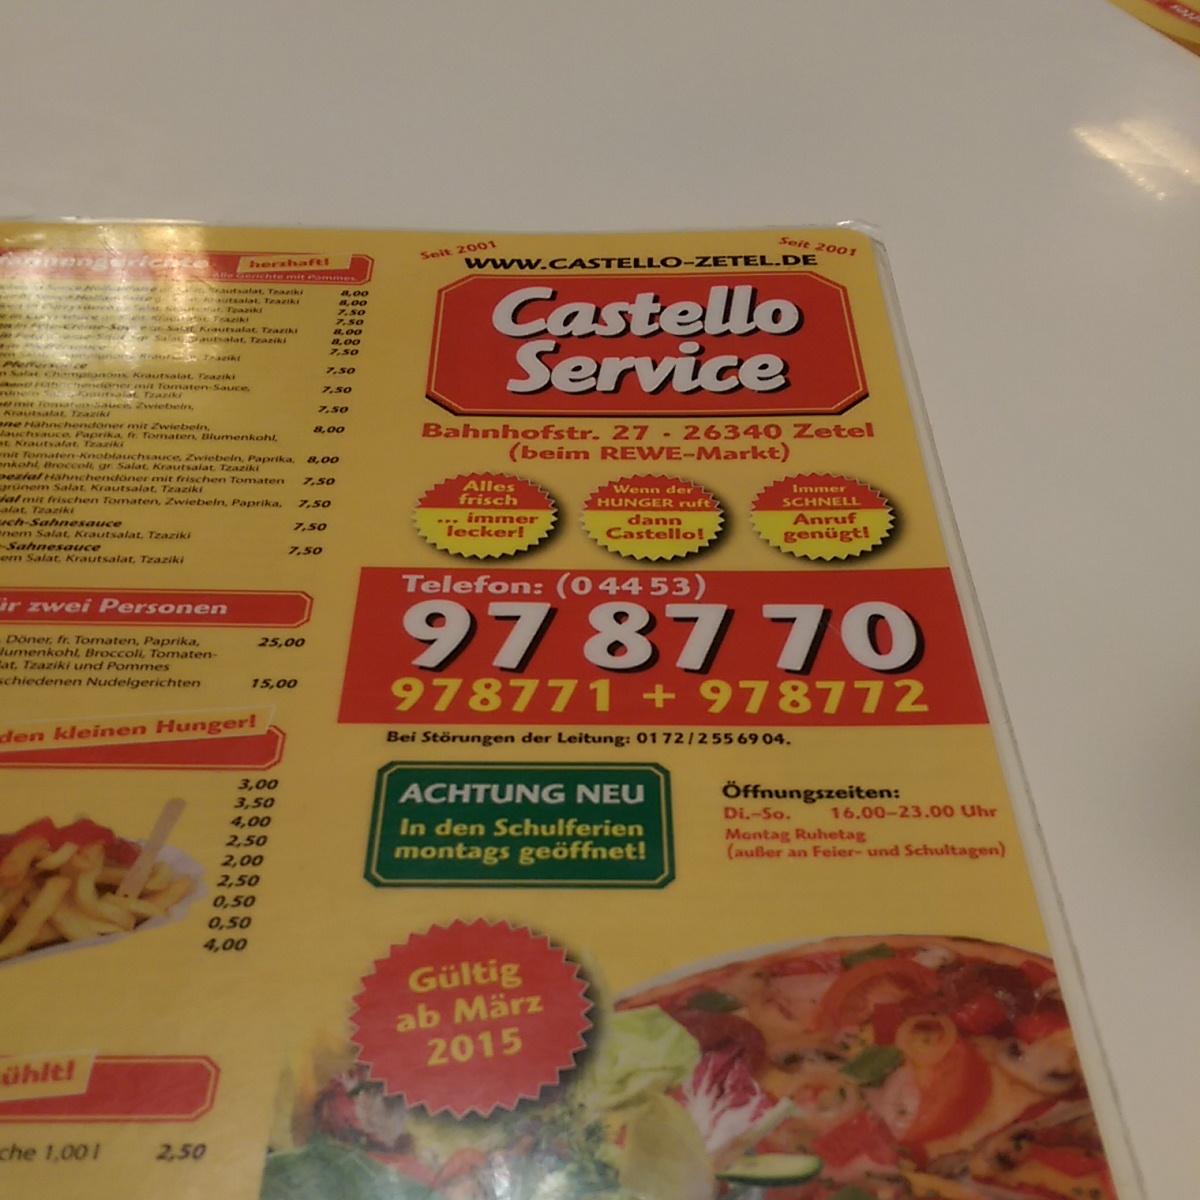 Restaurant "Castello Service" in  Zetel